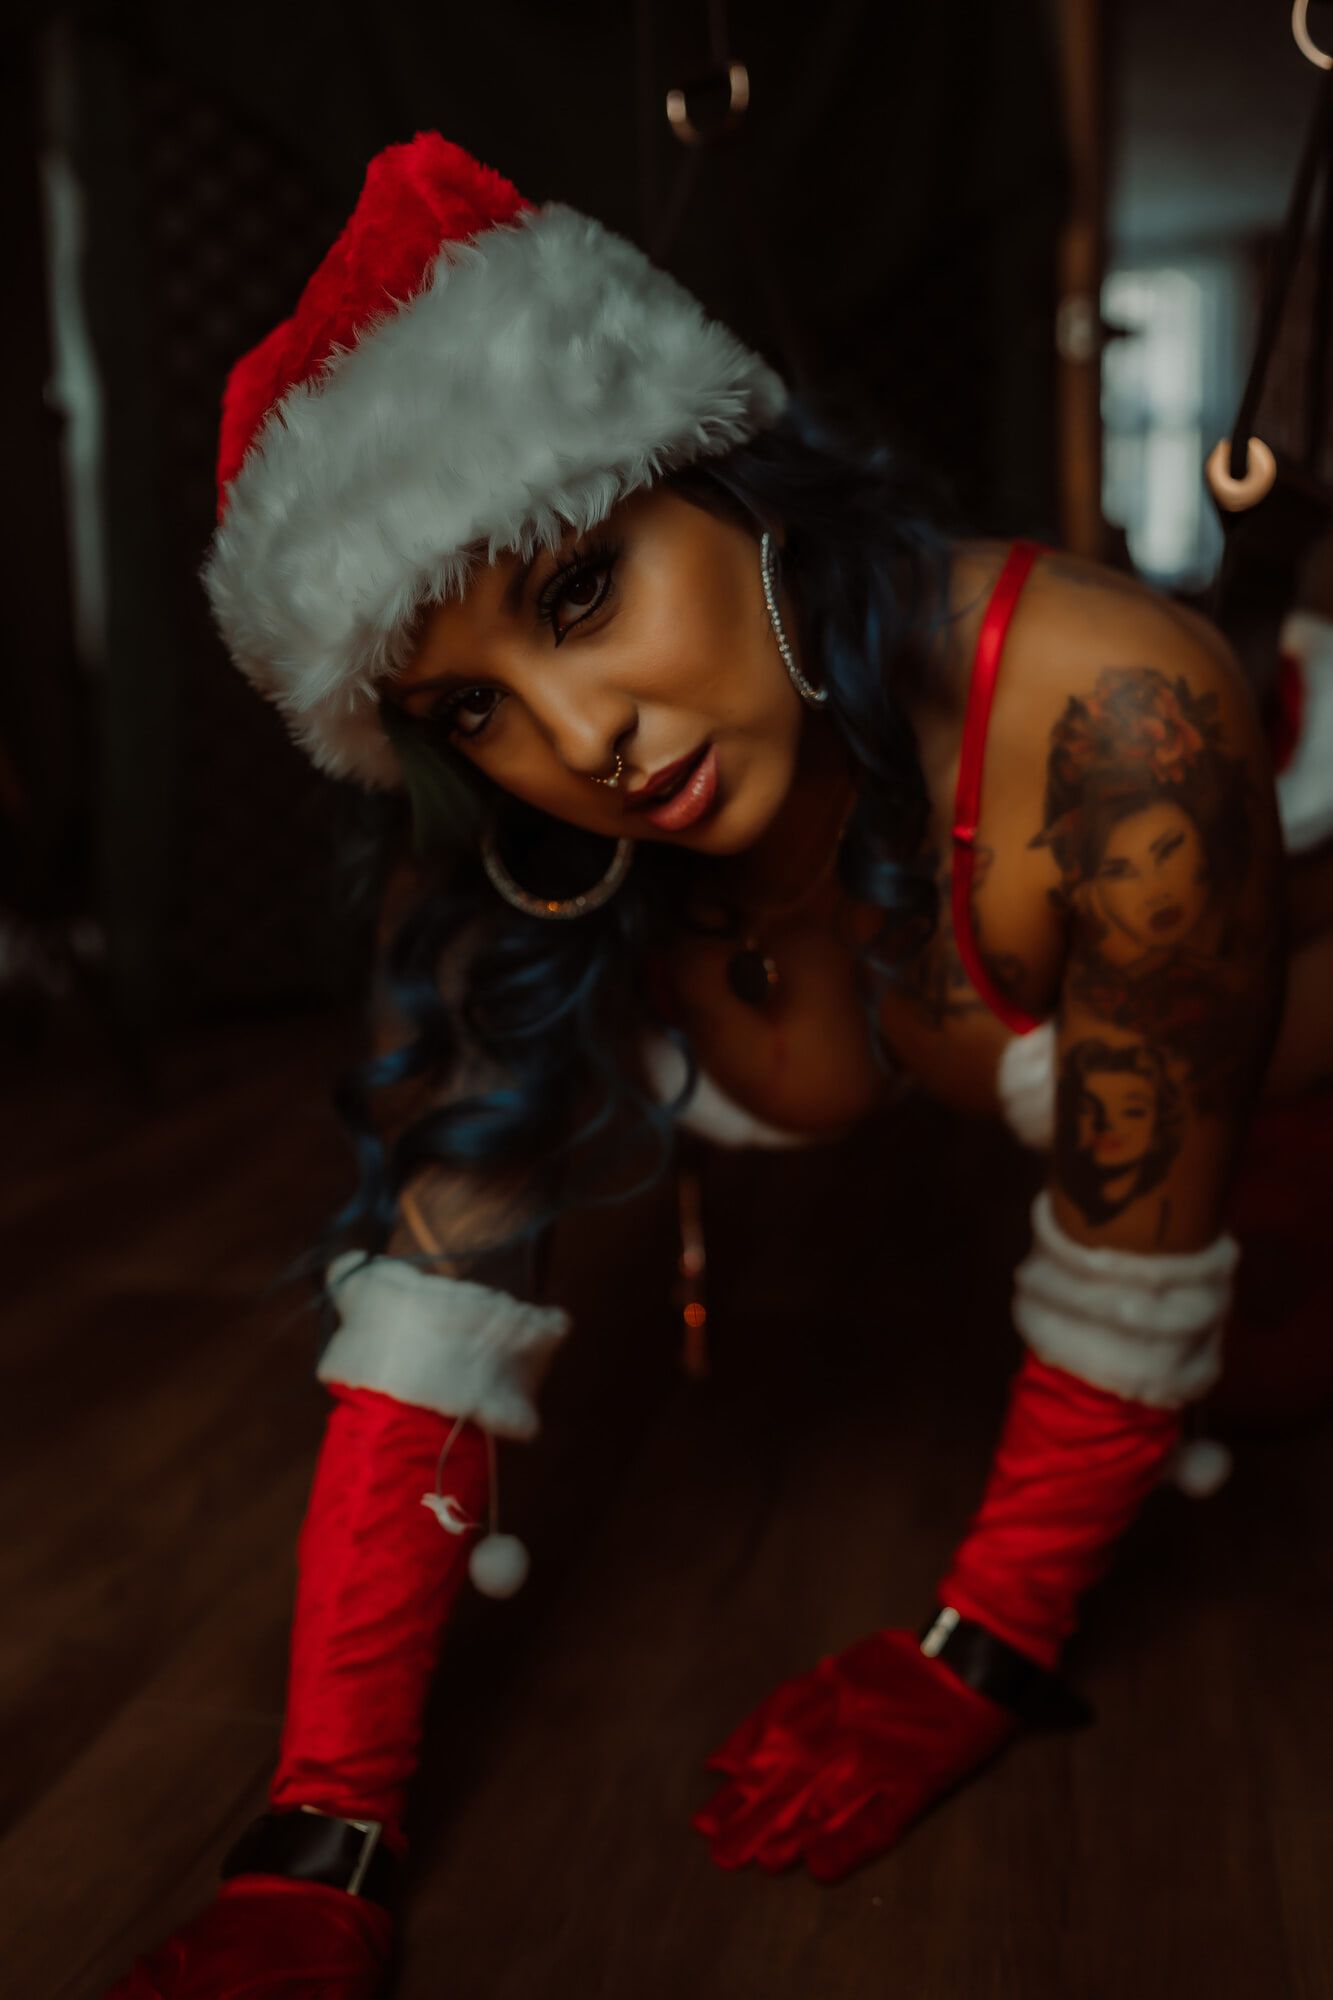 Happy holidays sexy 🥰 #2